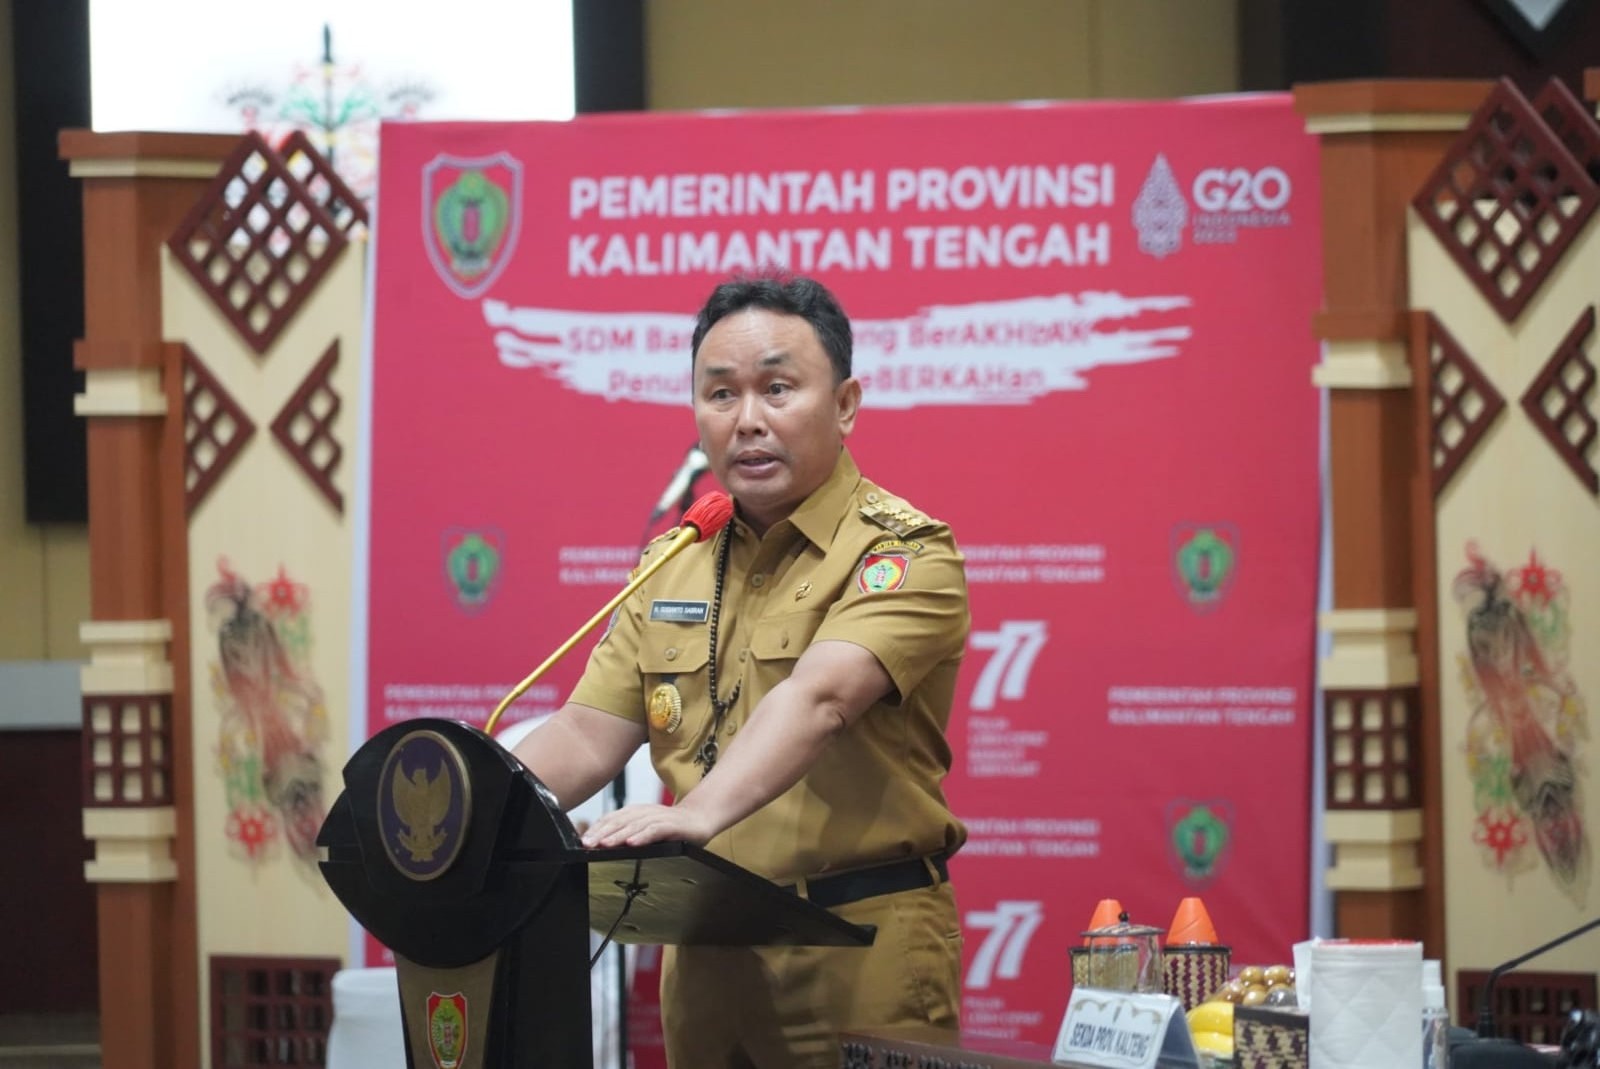 Gubernur : Perkebunan Besar Wajib Membangun Kualitas Kemitraan untuk Mensejahterakan Masyarakat Sekitar